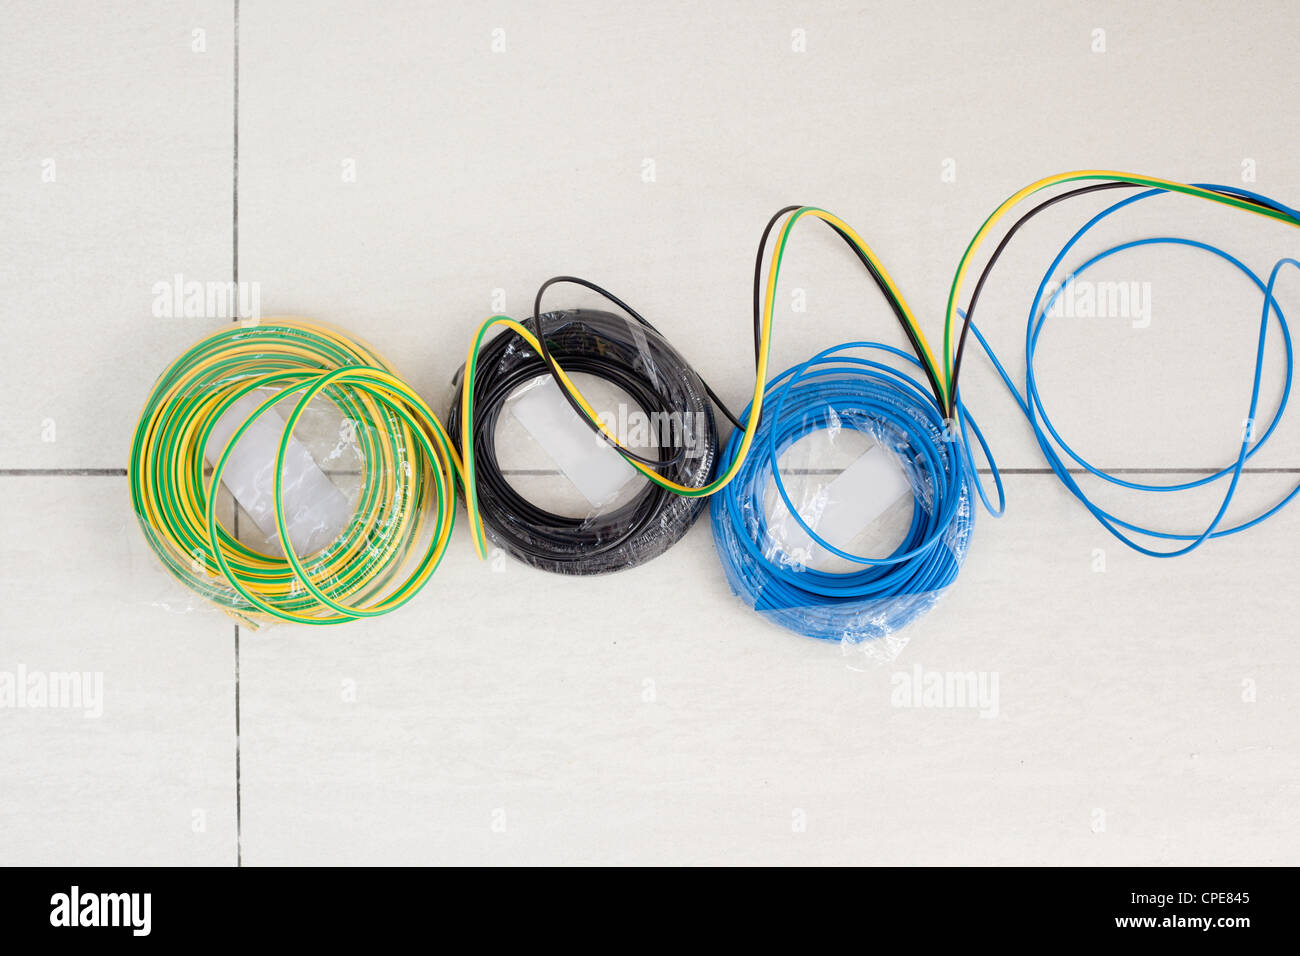 Bobina de cable eléctrico en tres colores: negro azul y verde Amarillo tierra Foto de stock